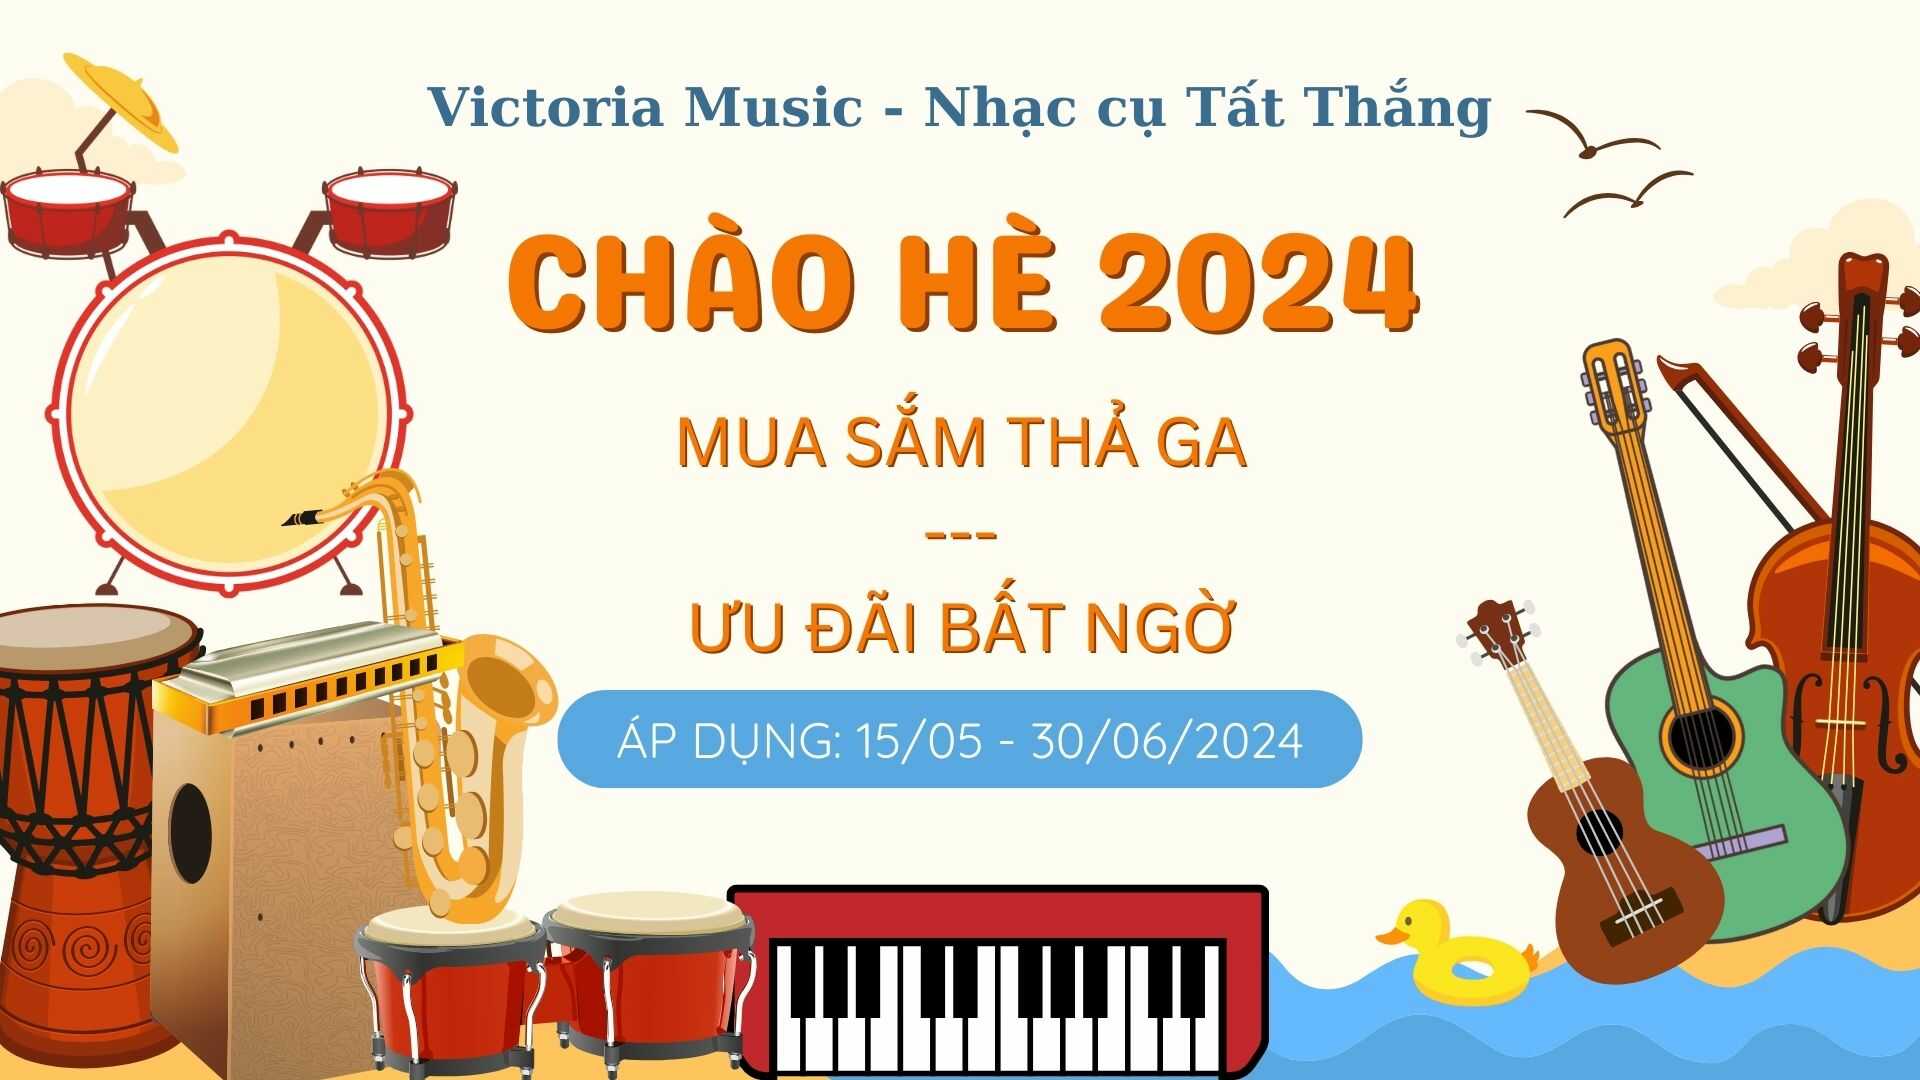 uu-dai-chao-he-2024 (2)